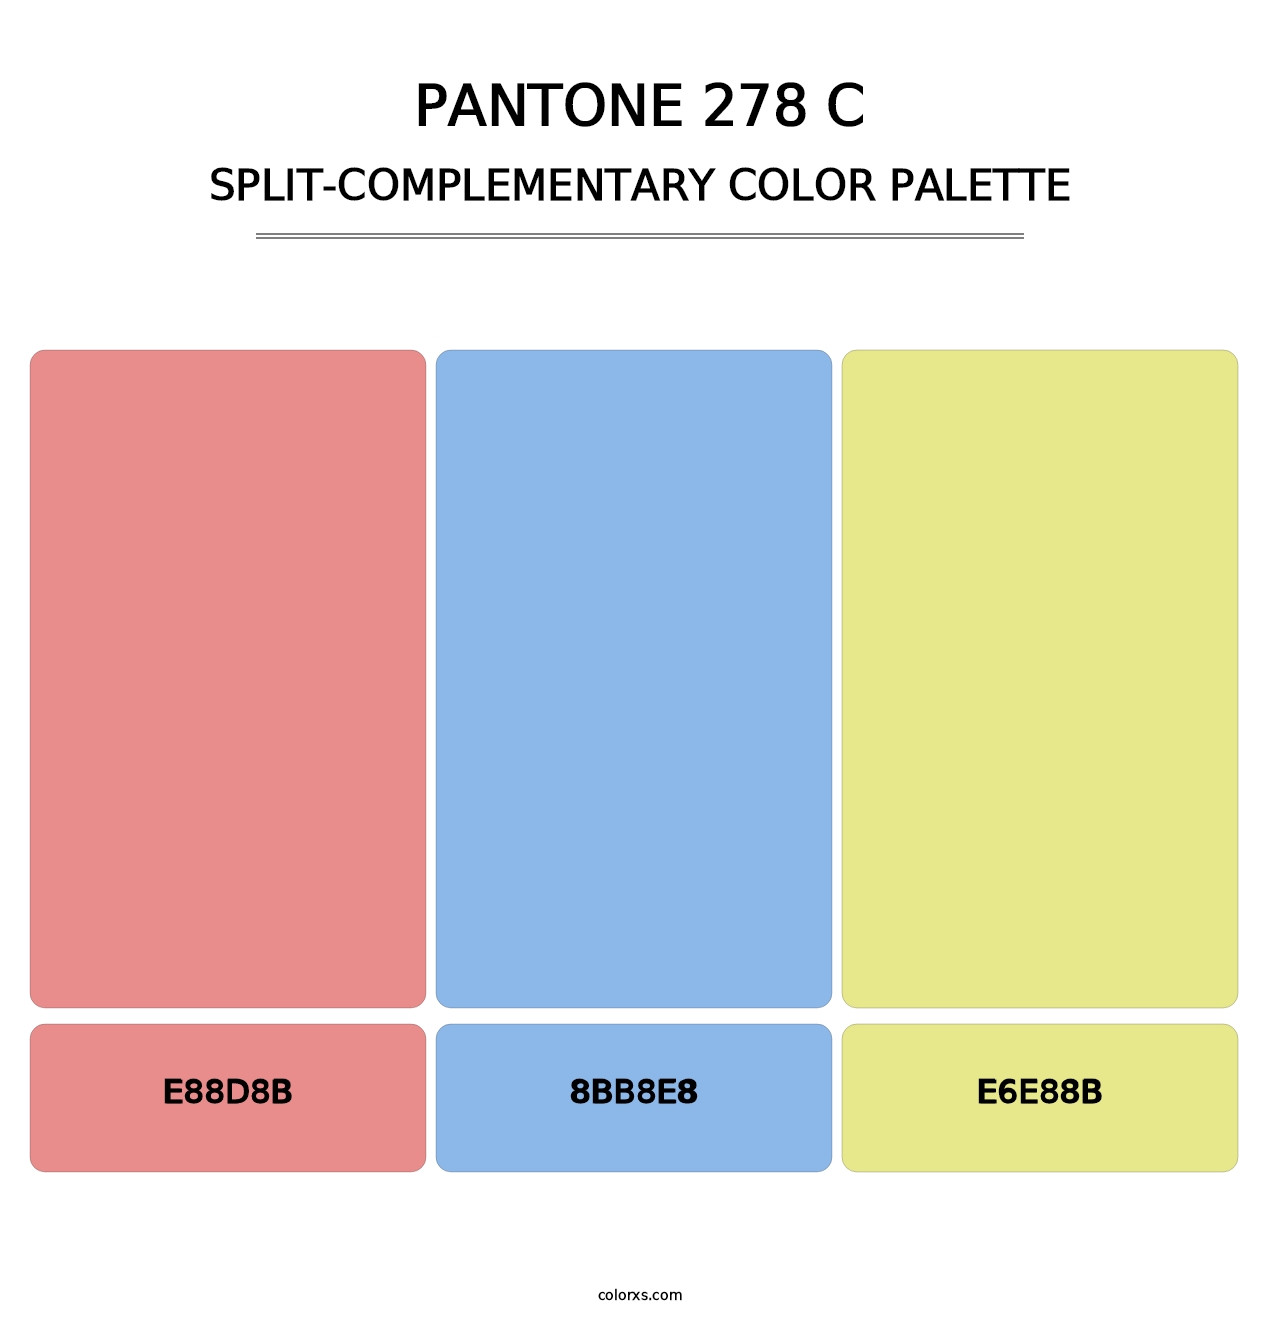 PANTONE 278 C - Split-Complementary Color Palette